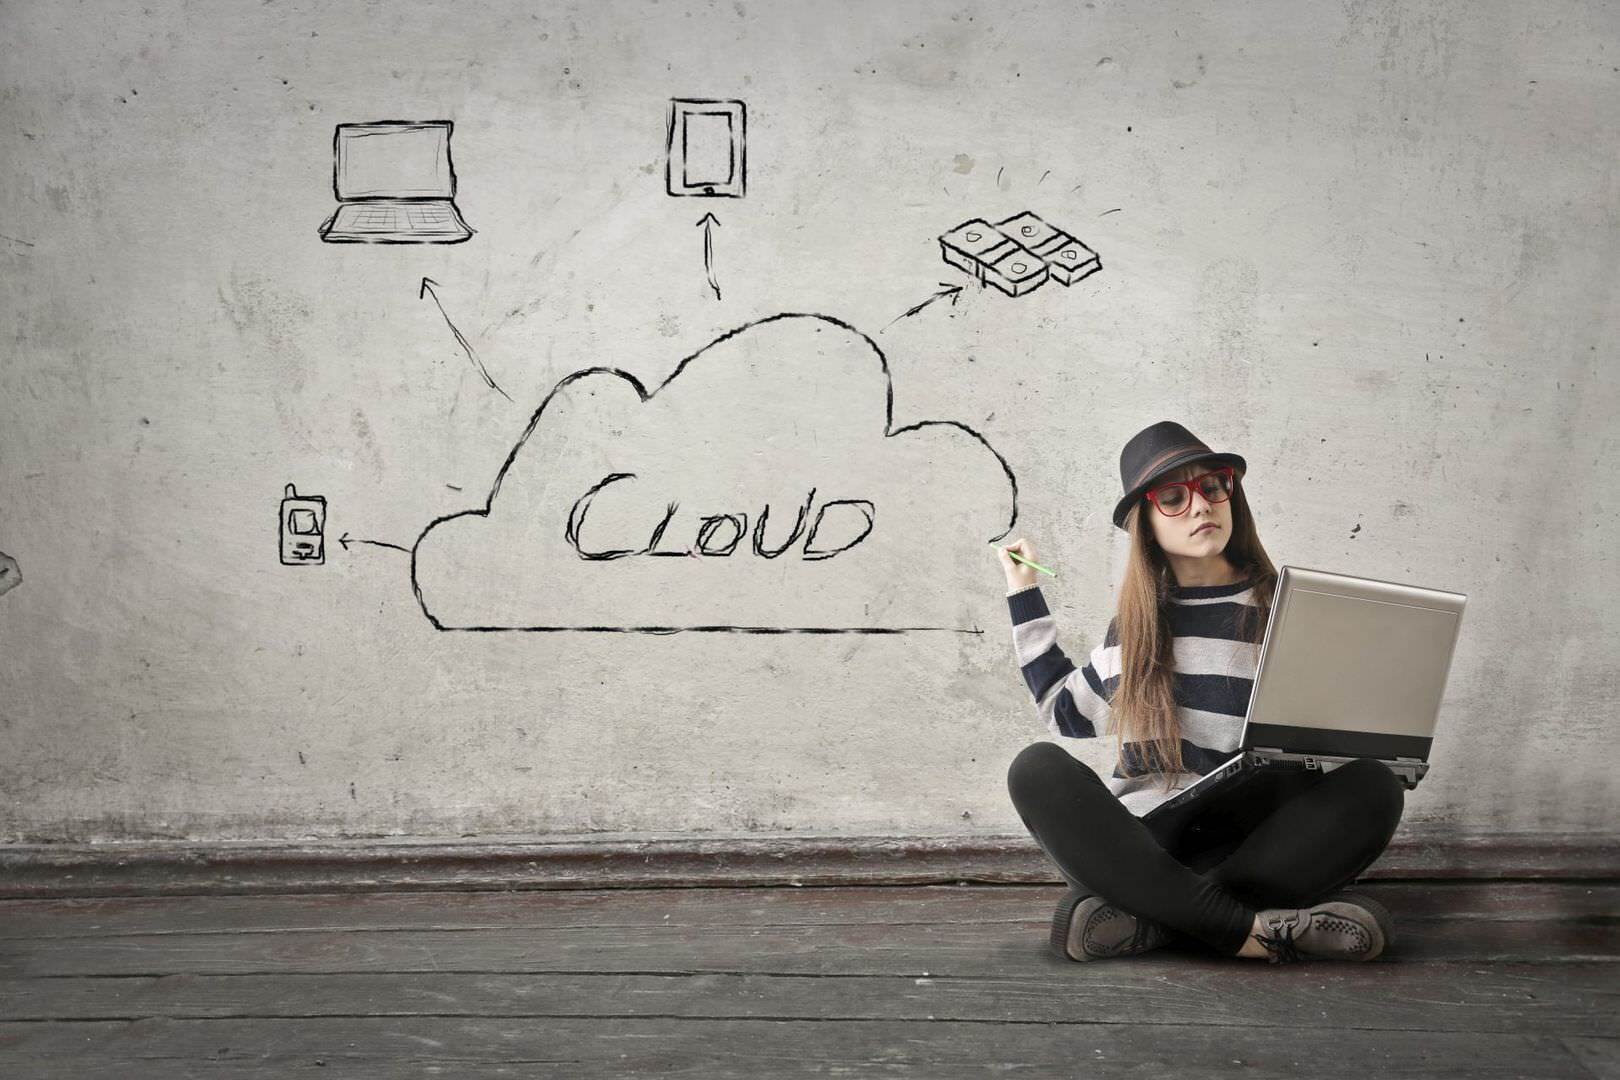 SAP Marketing Cloud Frau mit Notebook im Schneidersitz zeigt auf Wand wo "Cloud" geschrieben steht